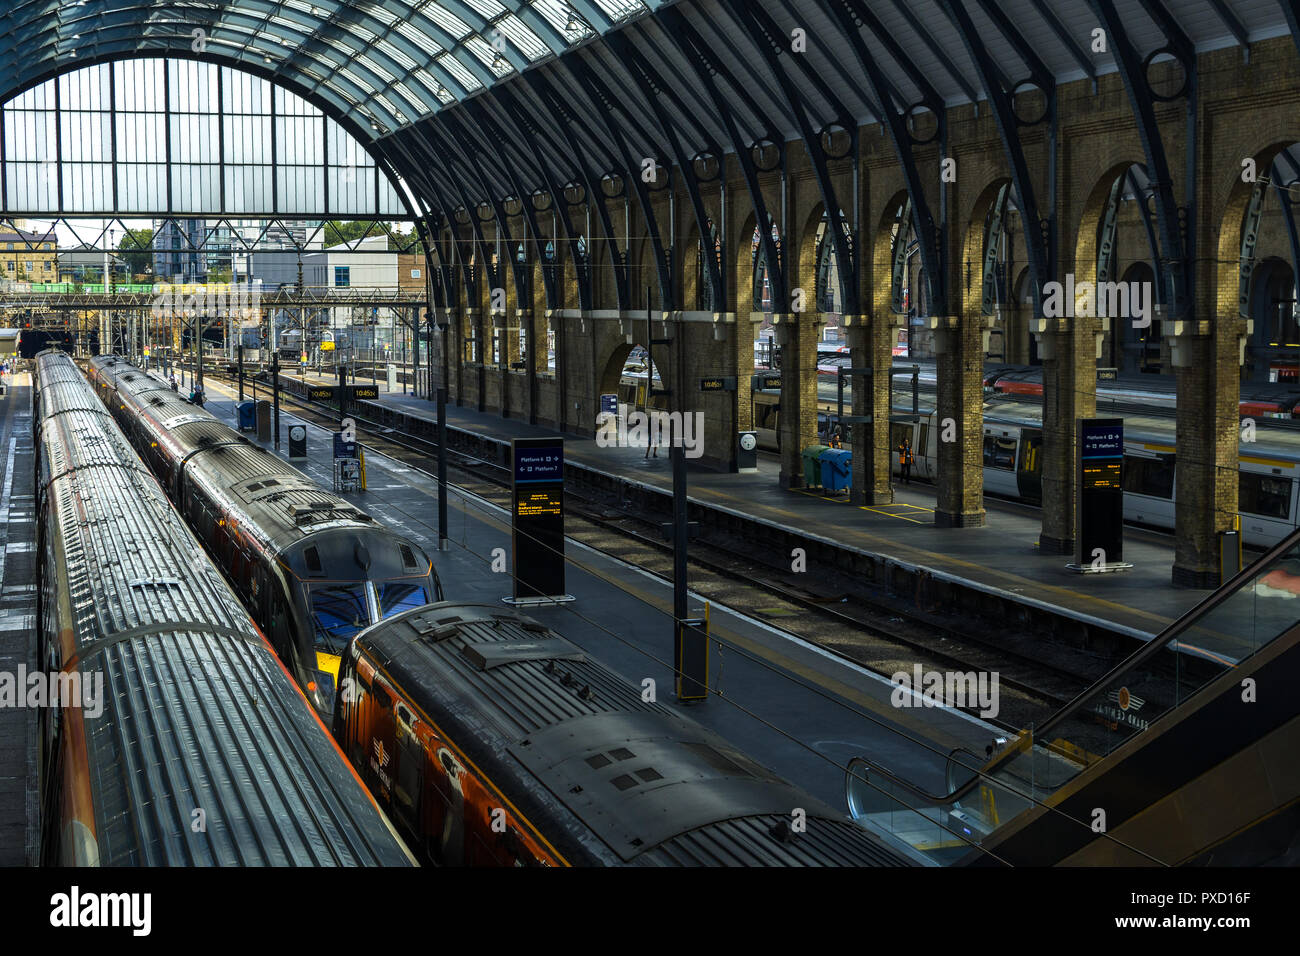 Blick auf den wichtigsten Plattformen in King's Cross Bahnhof mit Zügen an Plattformen, London, UK Stockfoto